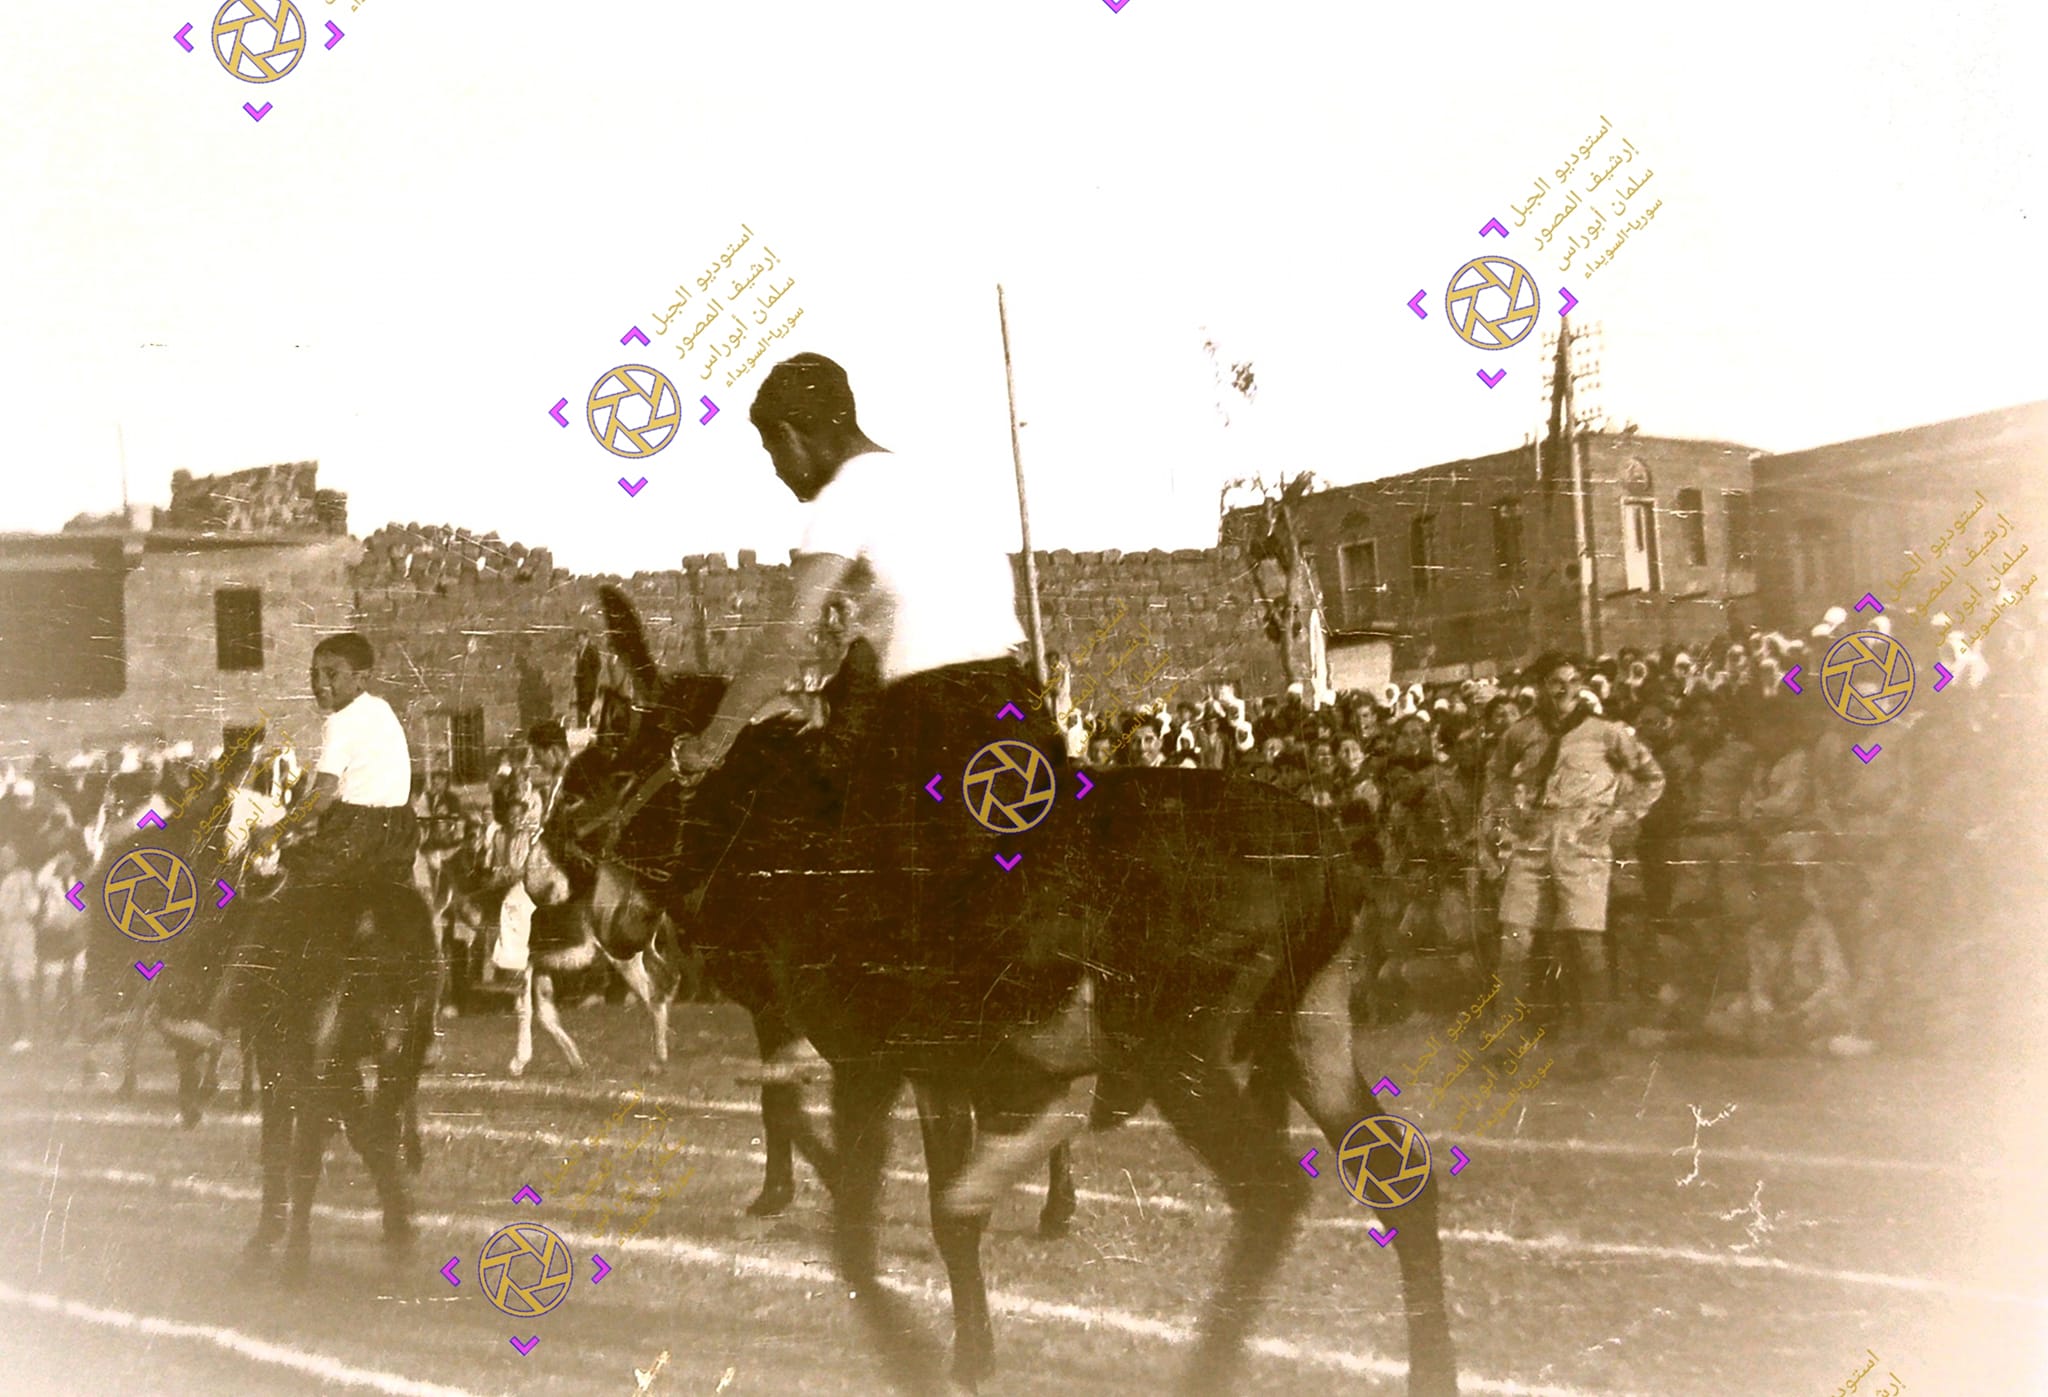 التاريخ السوري المعاصر - من صور المهرجان الرياضي في السويداء عام 1949م (3)